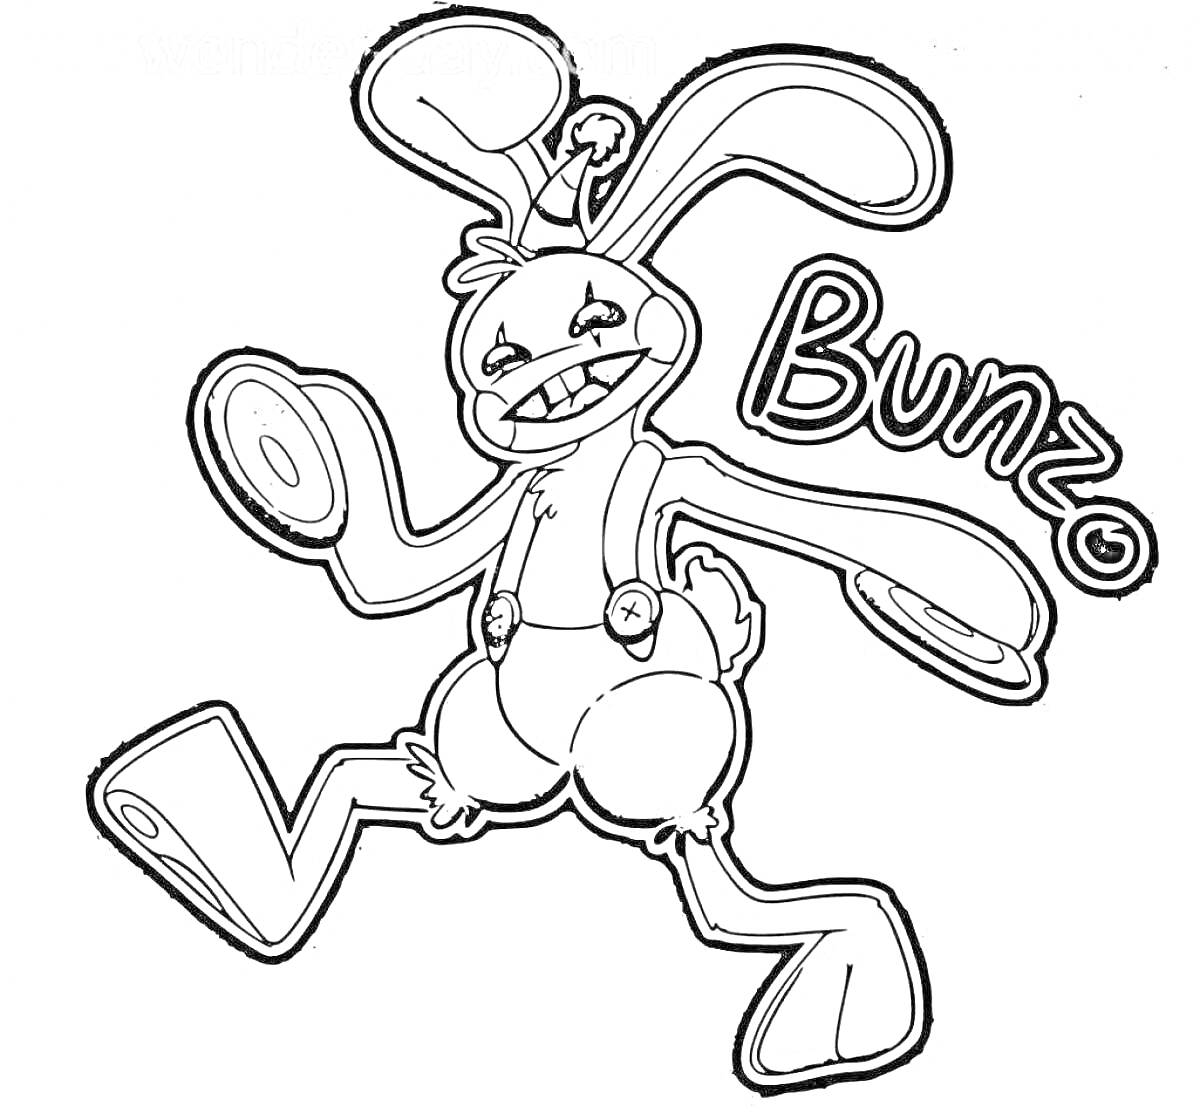 Раскраска Кролик Бонзо с колпаком, в шортах и подтяжках, с надписью 